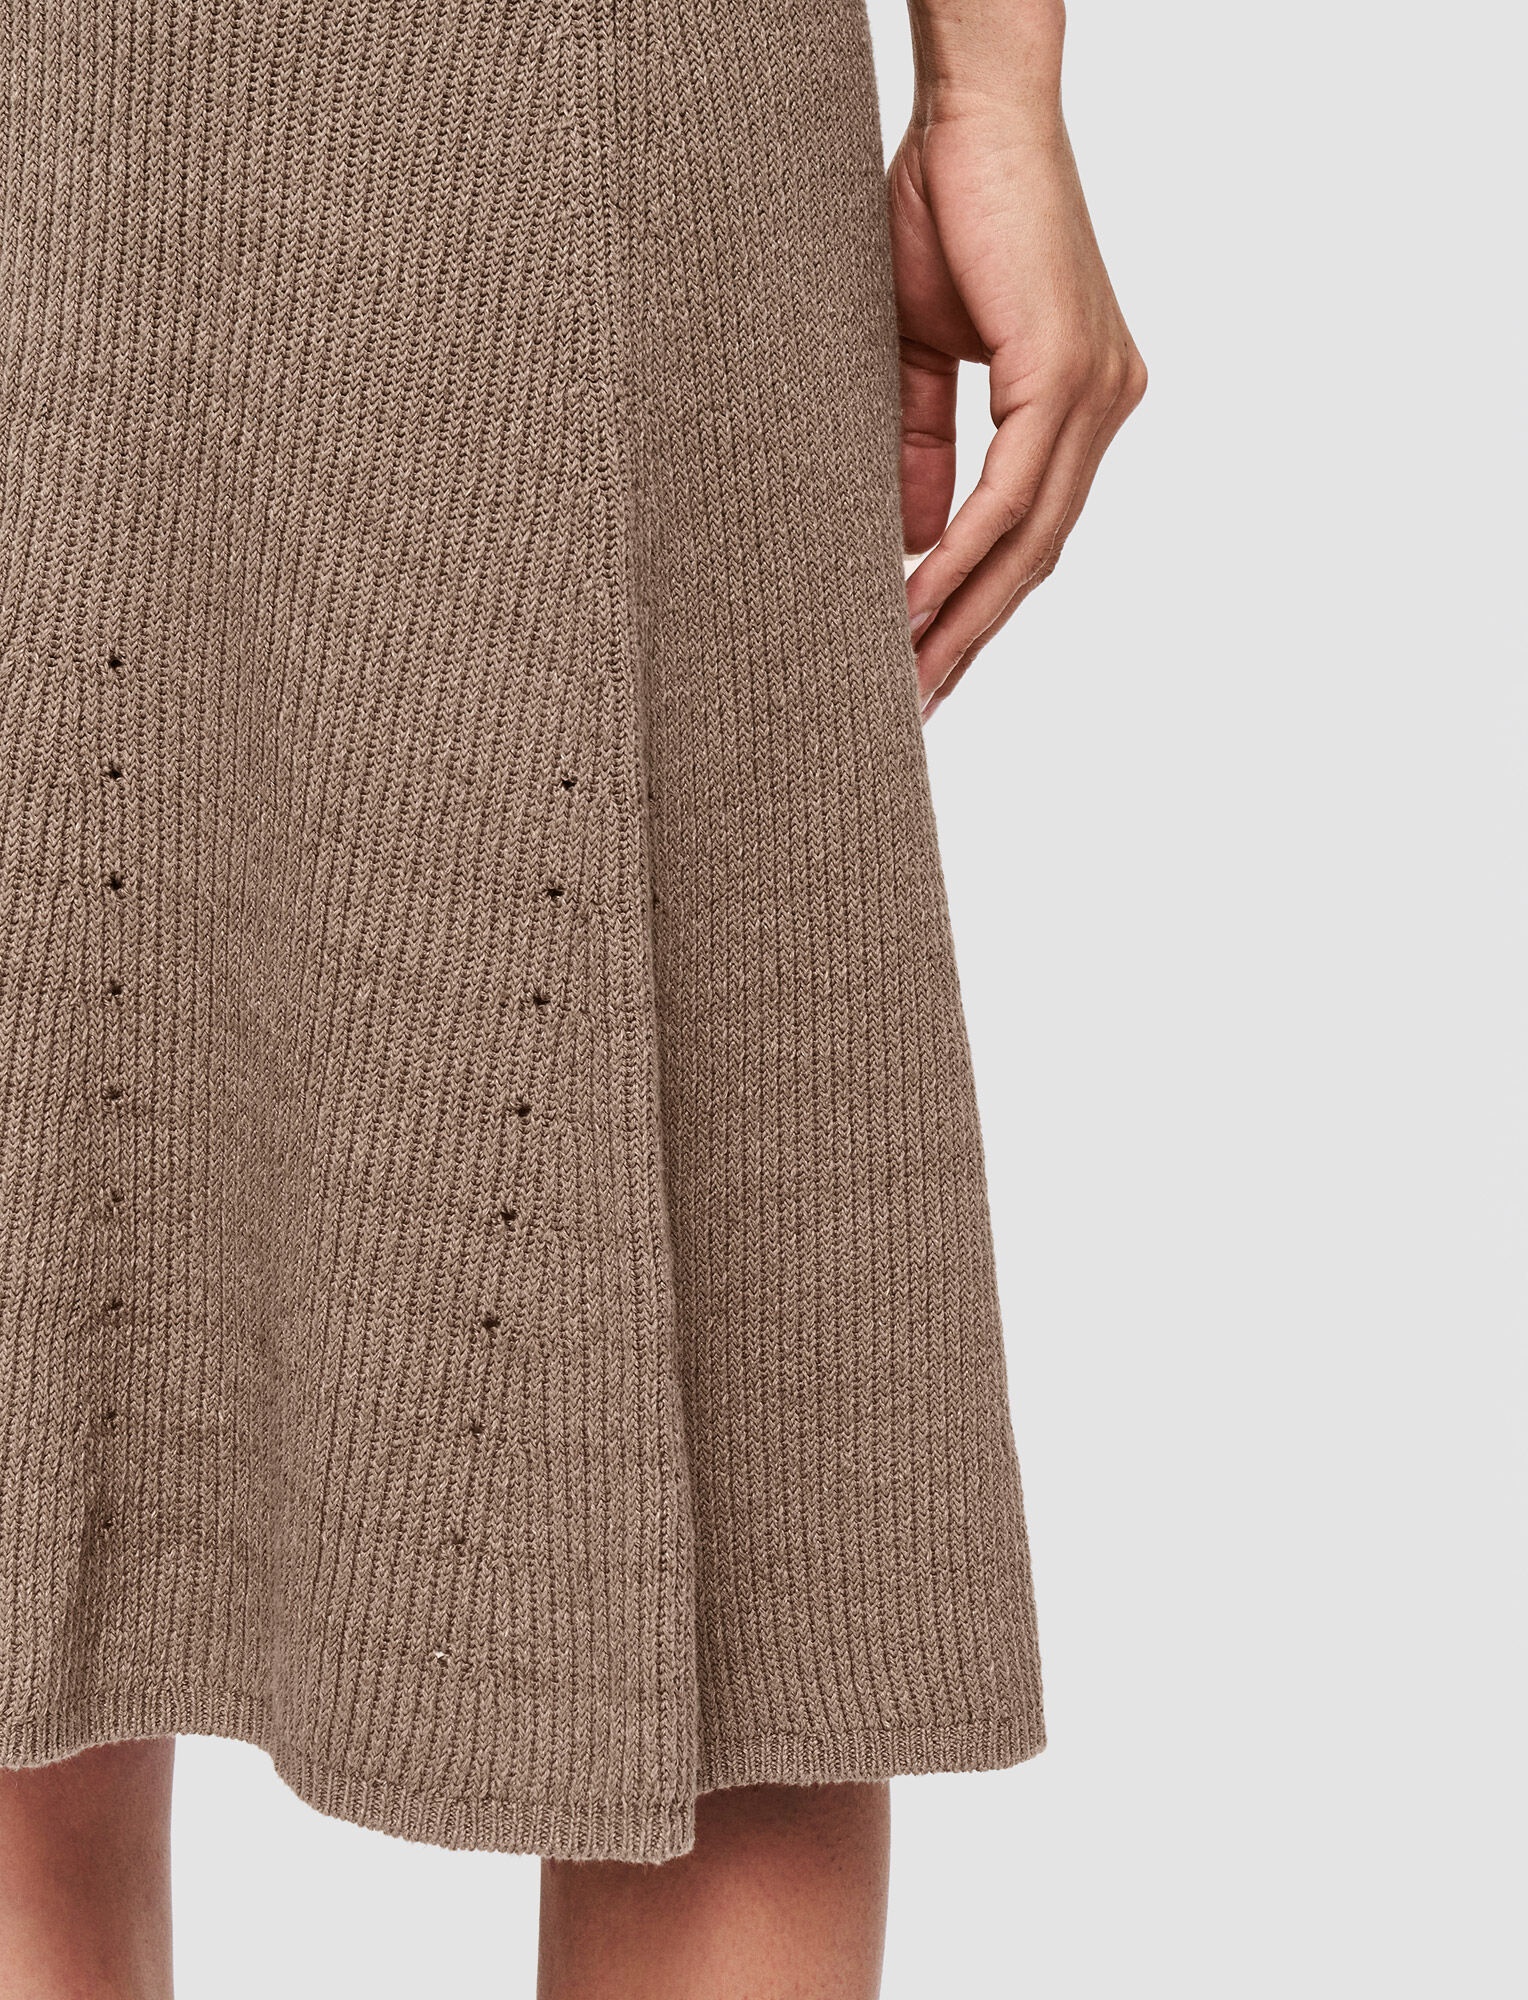 Linen Cotton Knitted Skirt - 5